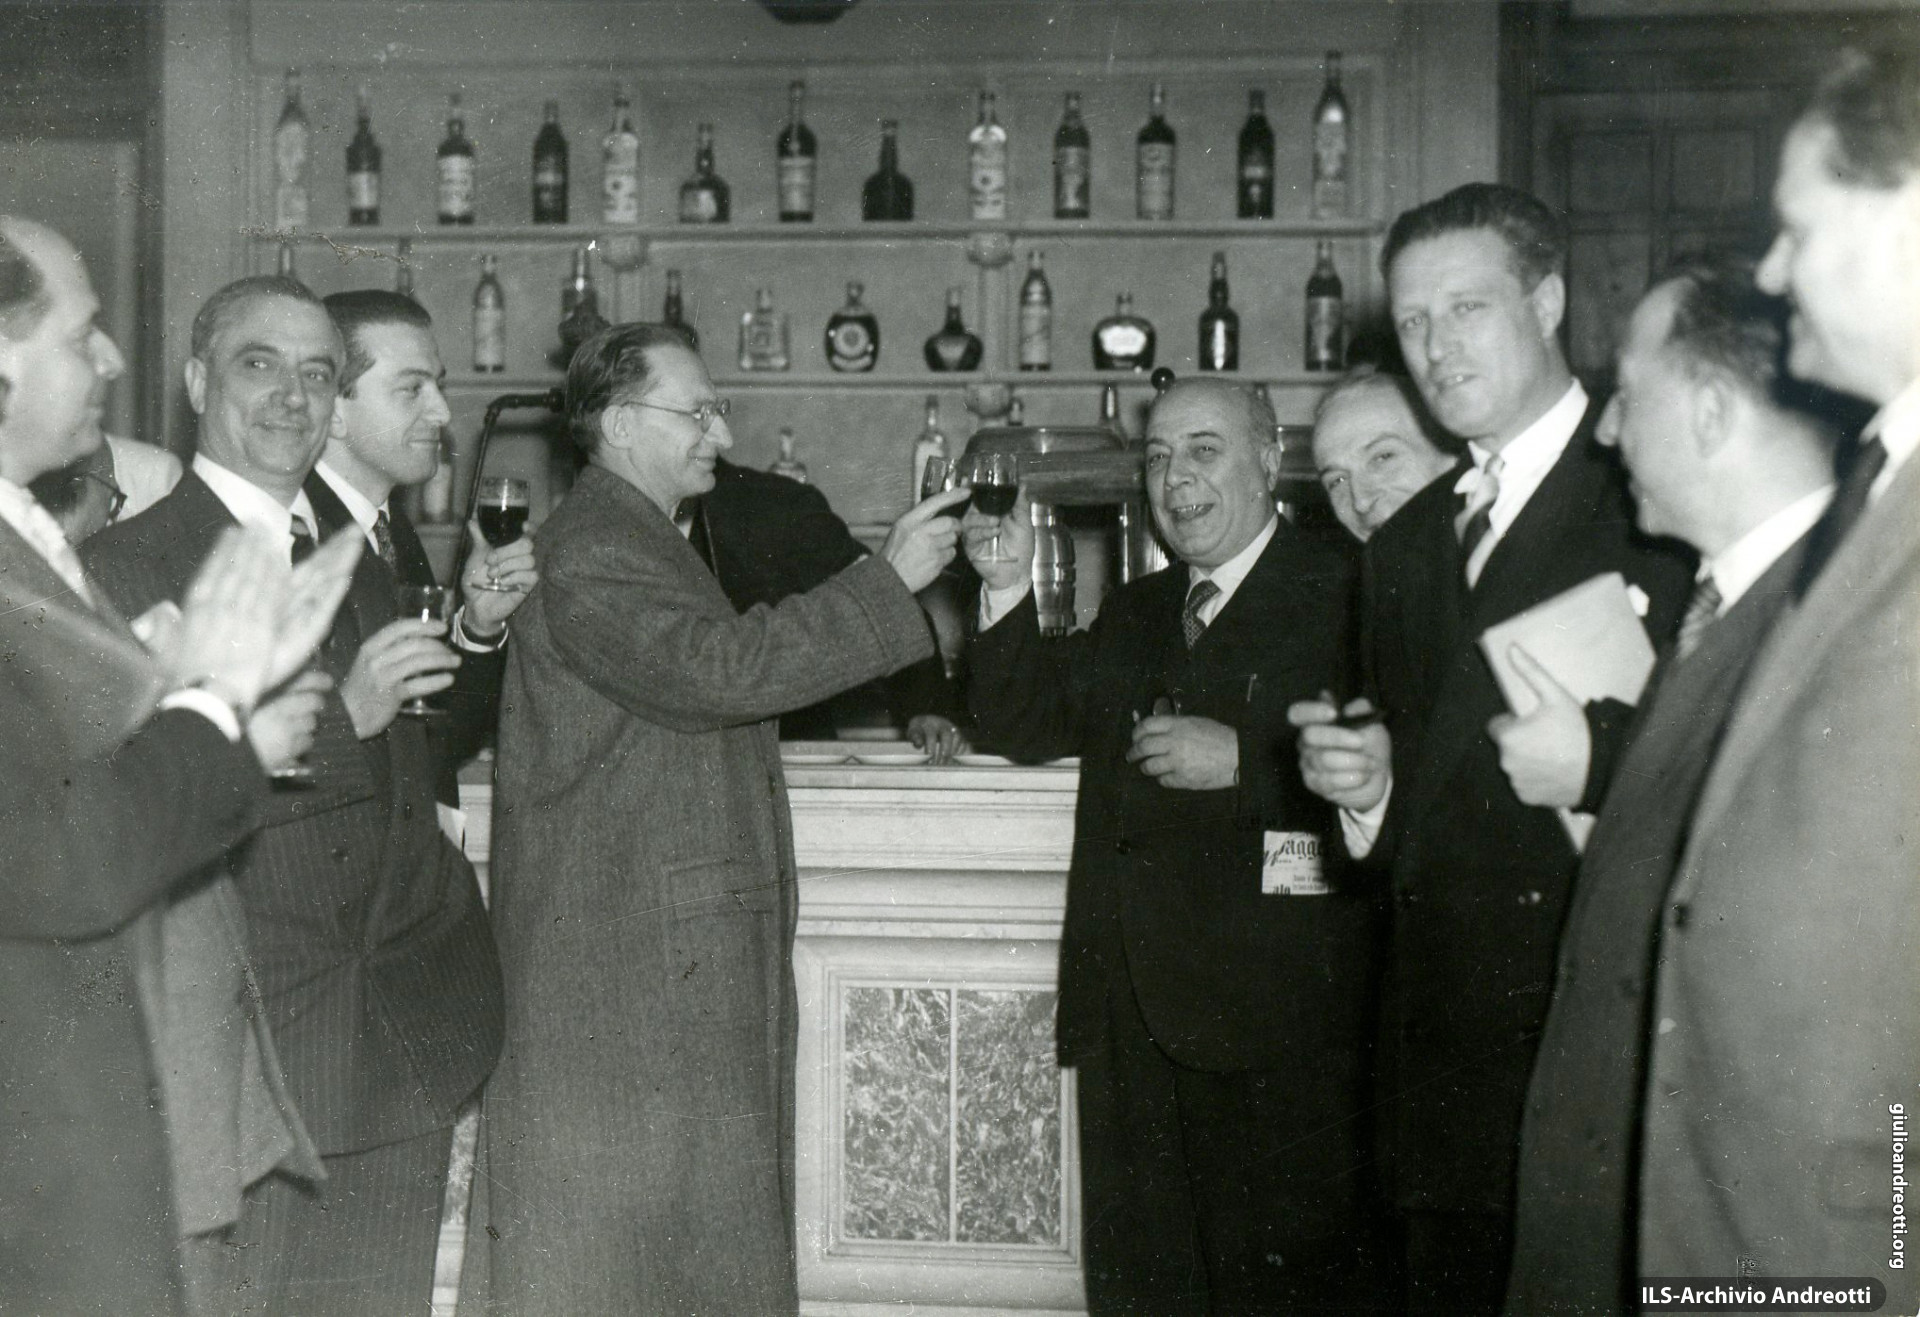 8 maggio 1948. Brindisi alla buvette dopo la elezione di Gronchi alla Presidenza alla Camera. Da sinistra: Togni, Campilli, Andreotti, De Gasperi, Fuschini, Segni, Pertusio.